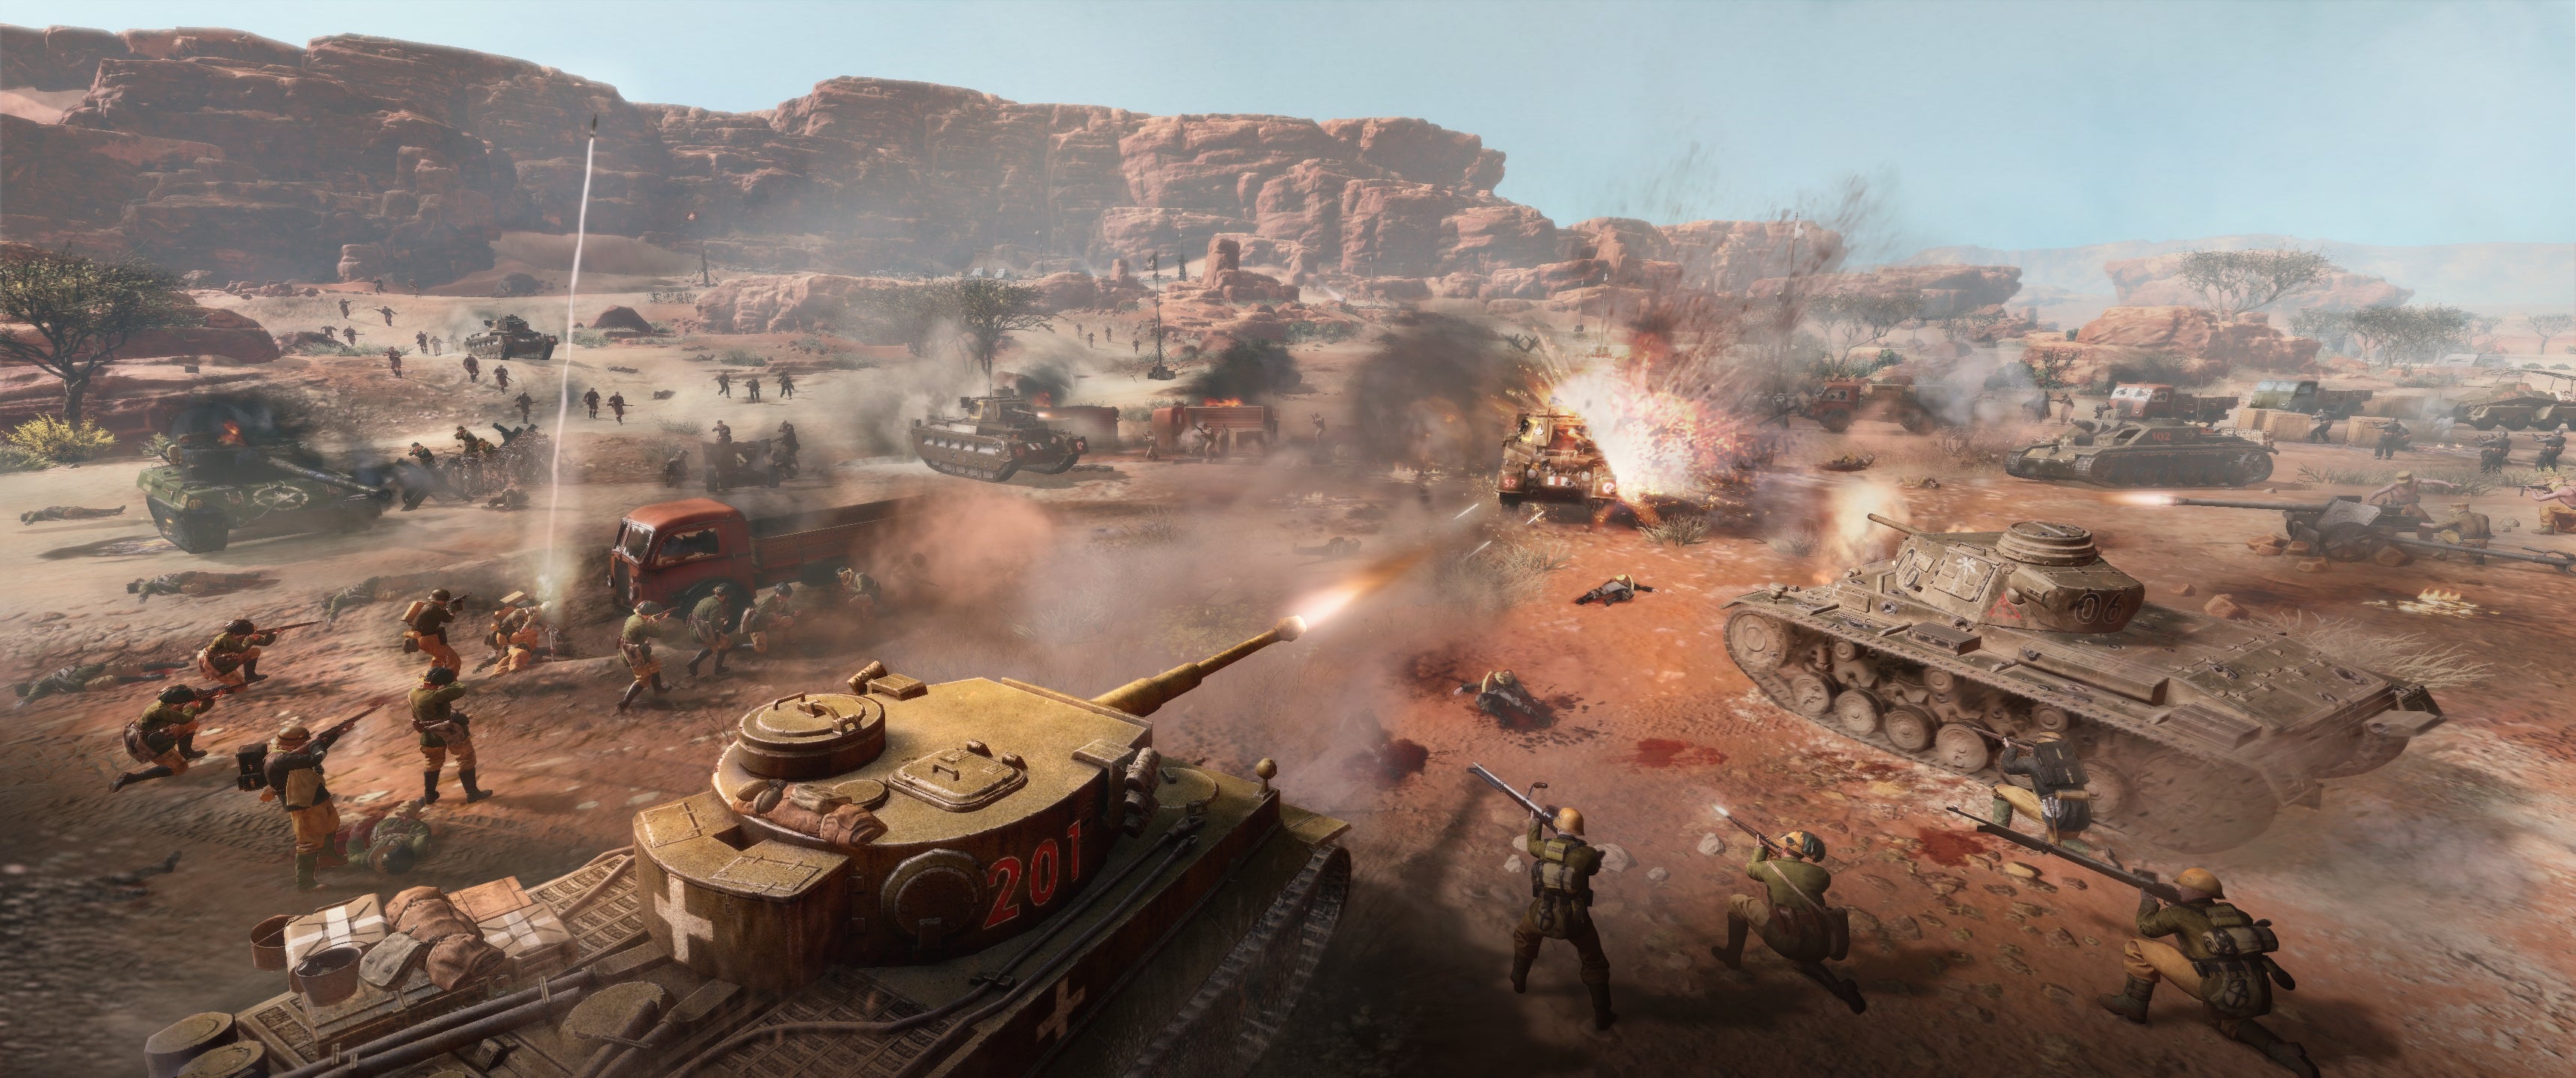 Pratinjau Company of Heroes 3 - bidikan aksi perang tank yang diedit dan Konvoi Campbell di padang pasir